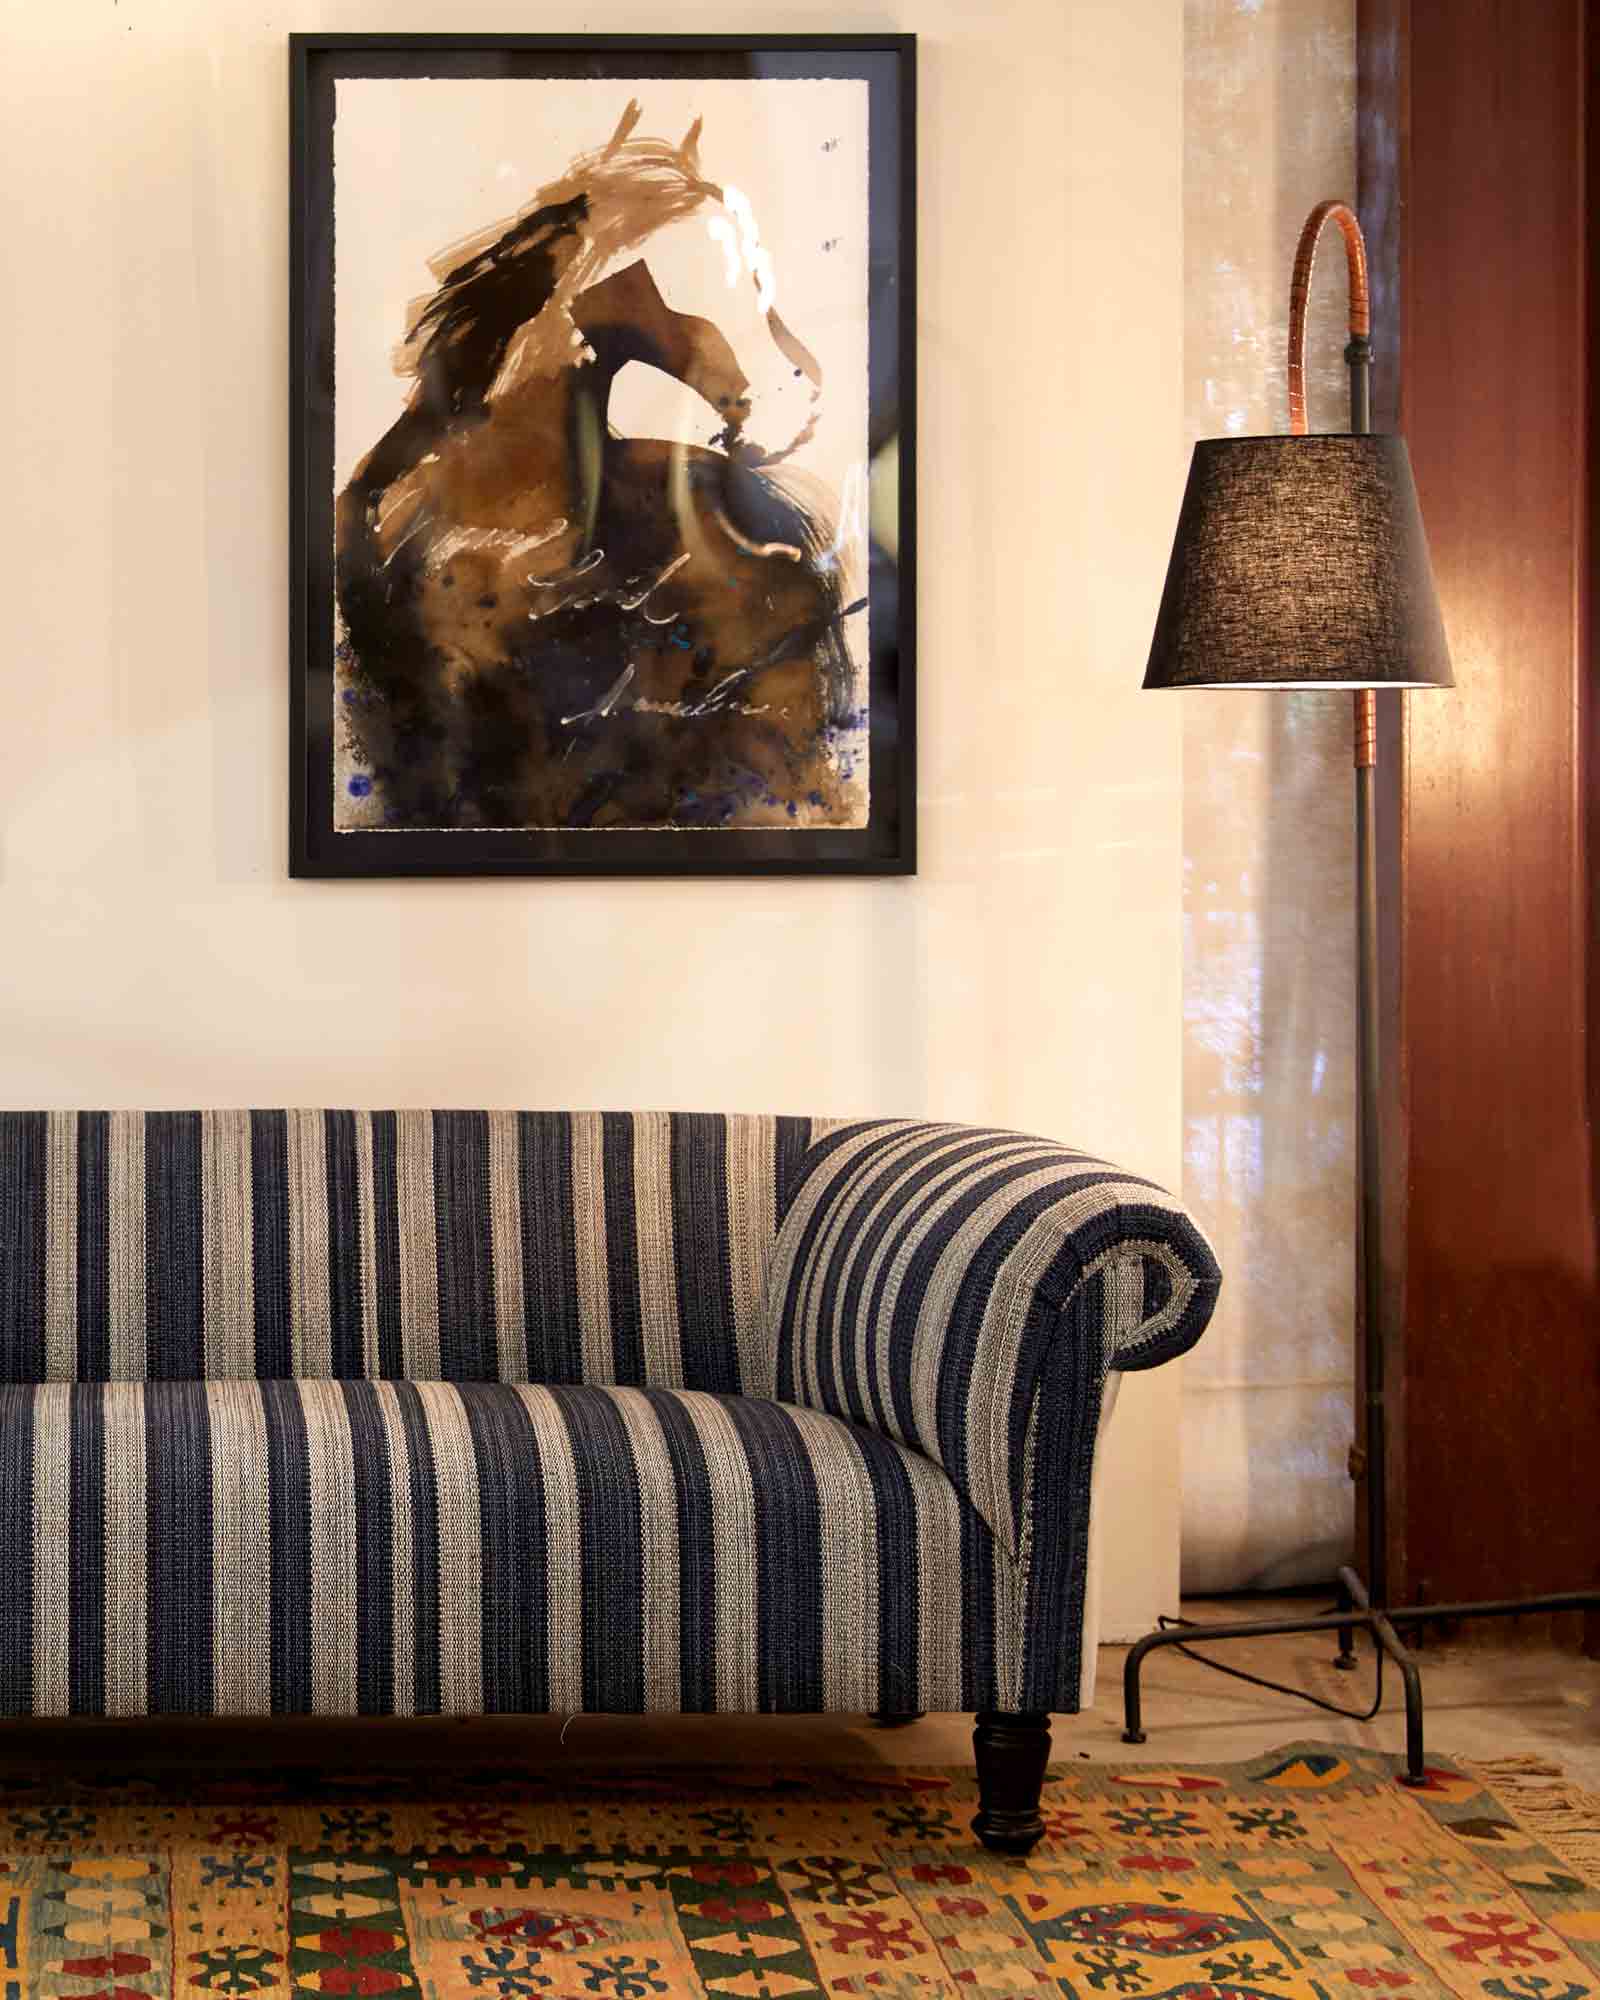  蓝白相间的软垫沙发靠墙摆放，墙上挂着一幅马的画. 金属底座落地灯在沙发旁边，有一个深棕色的灯罩.  